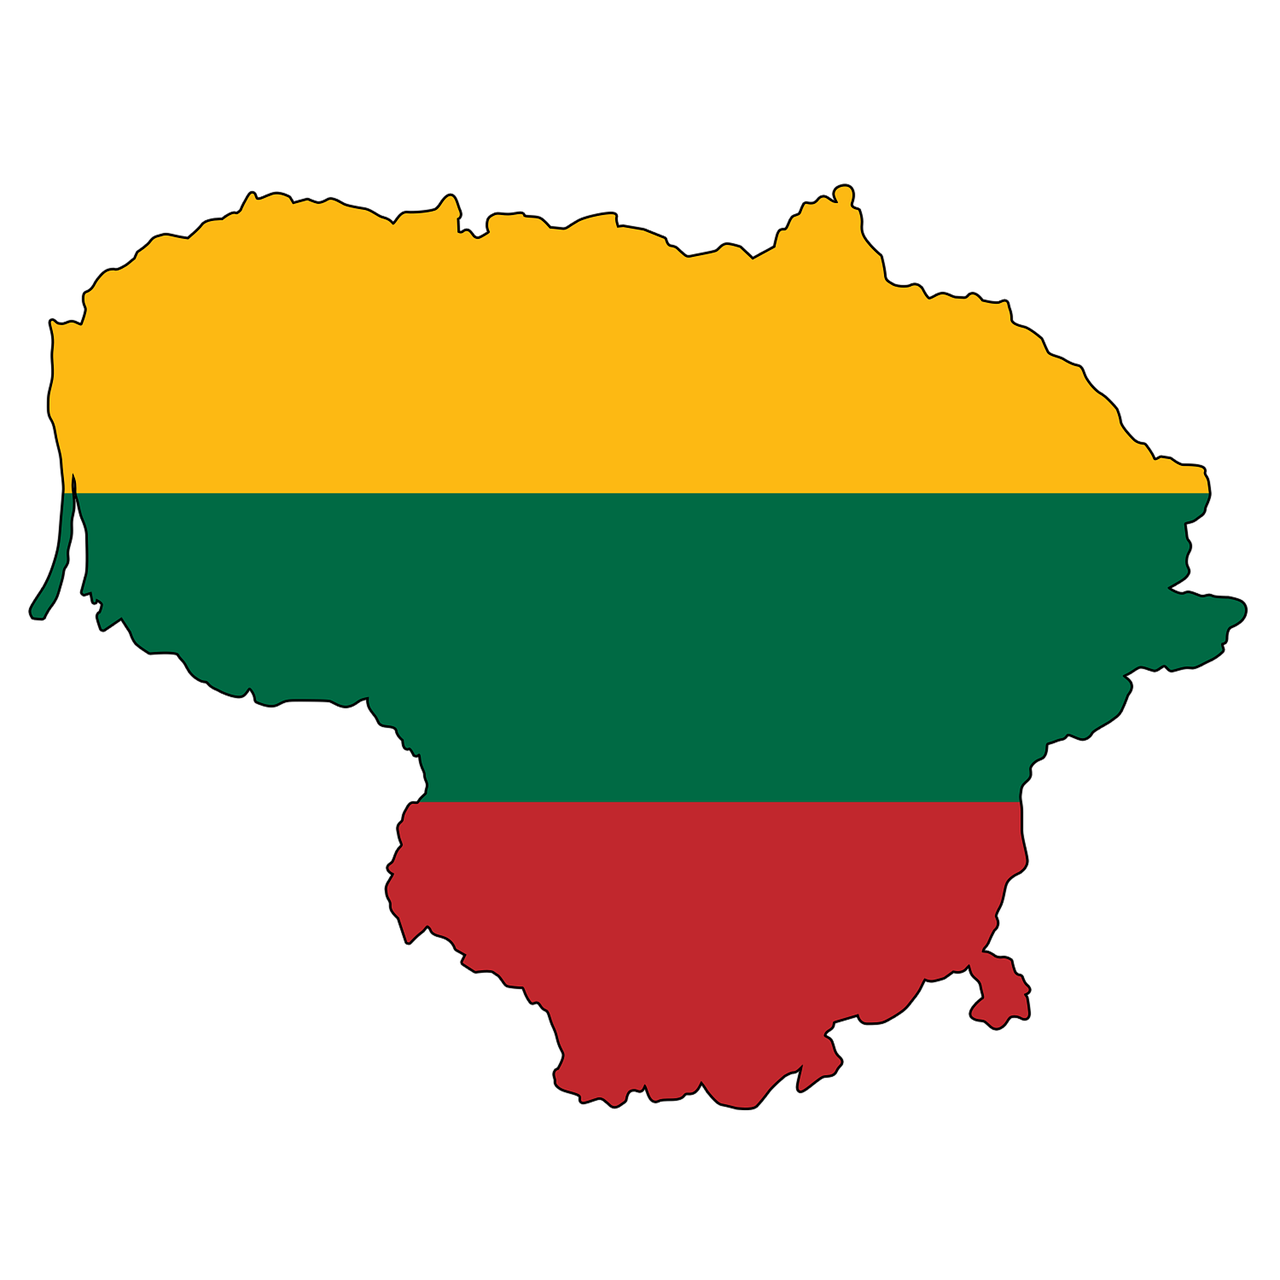 Balandį Lietuva pratęs Baltarusijos sienos tvorą – Pasaulio taikos organizacija